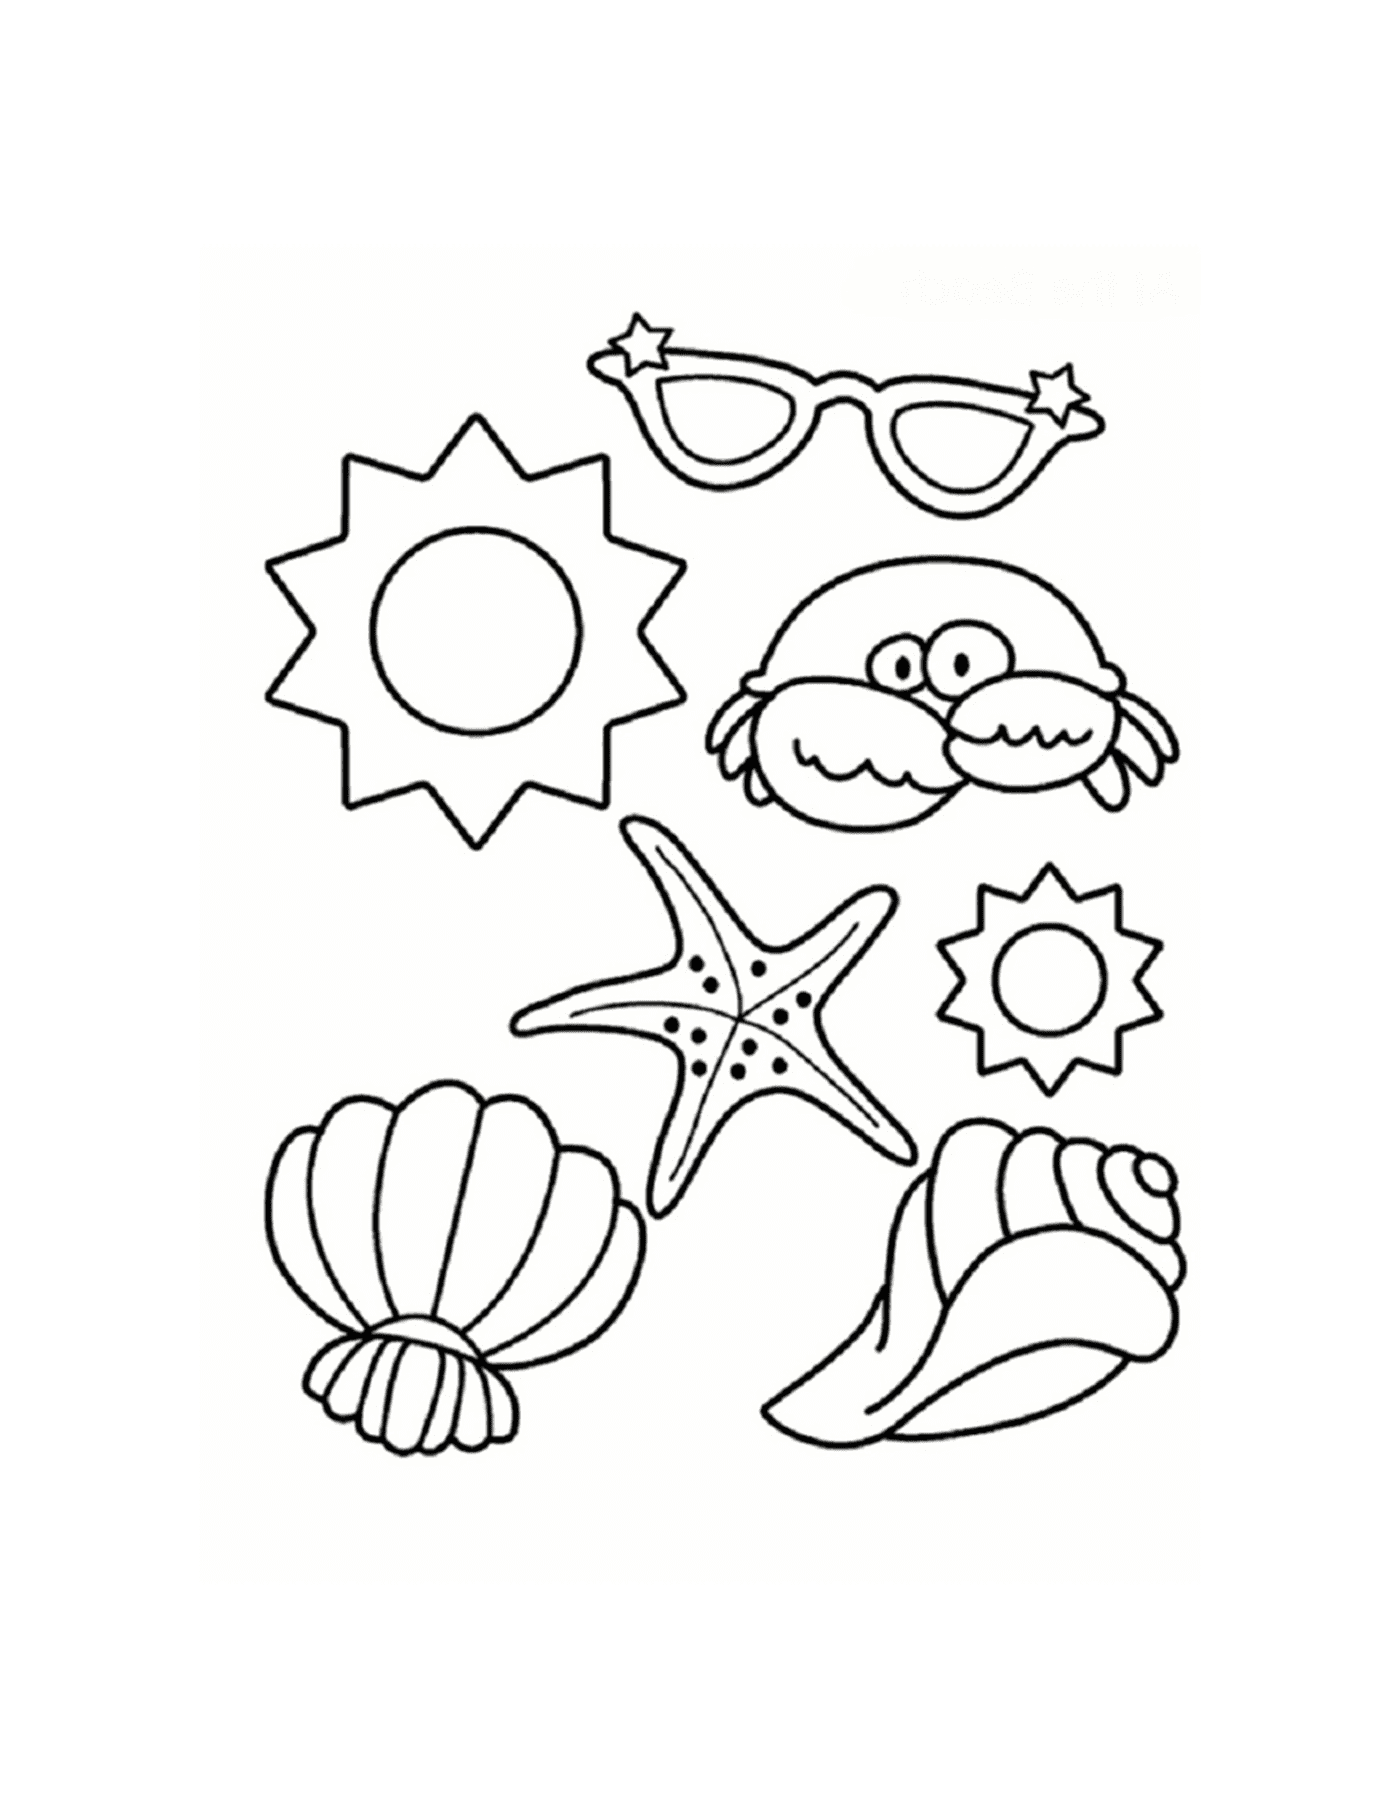  海滩上的贝壳鱼、海星鱼、螃蟹和太阳眼镜 